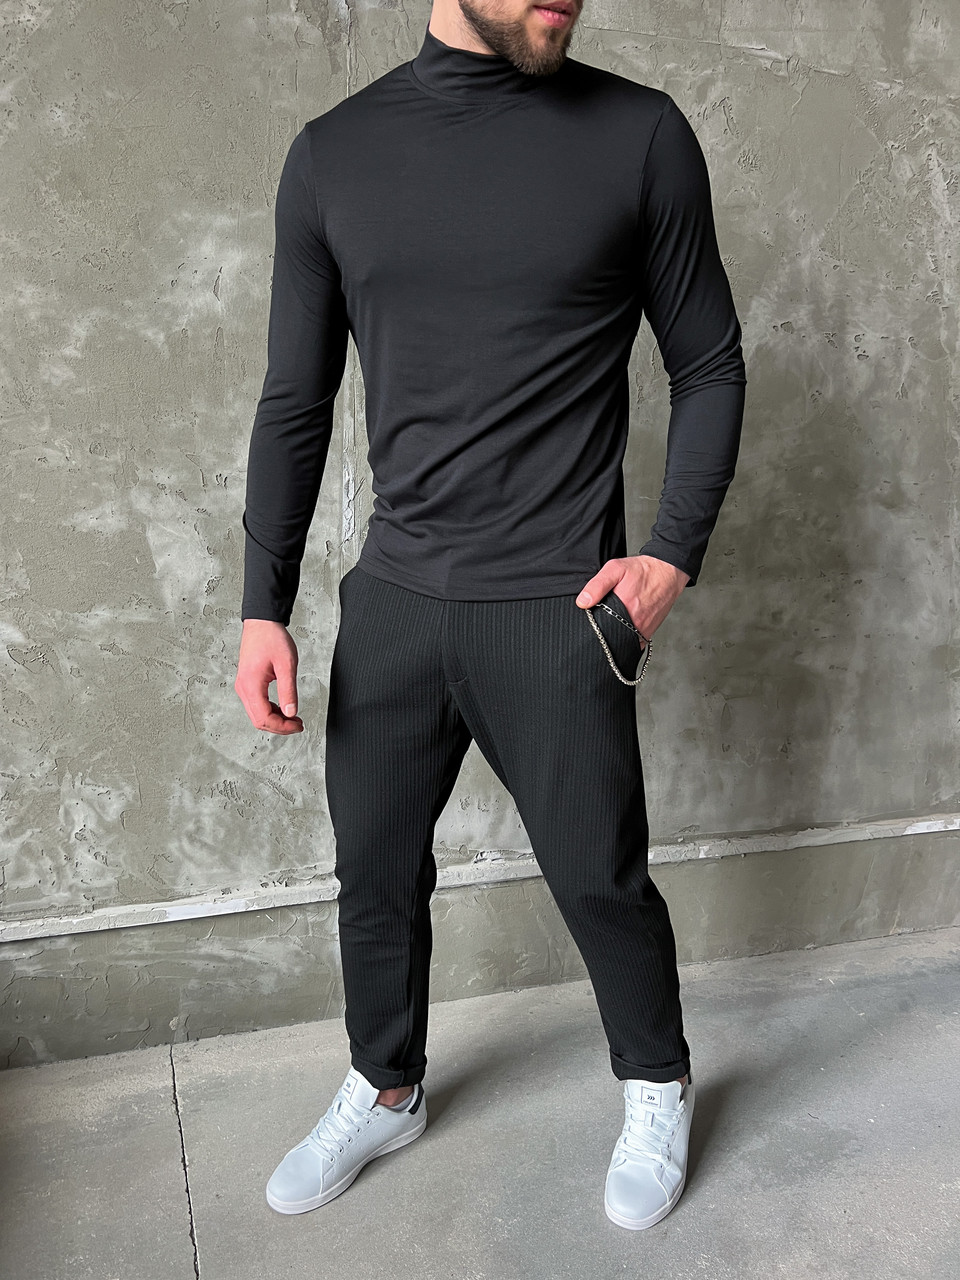 Штани чінос чоловічі чорні модель Вілл - Фото 2